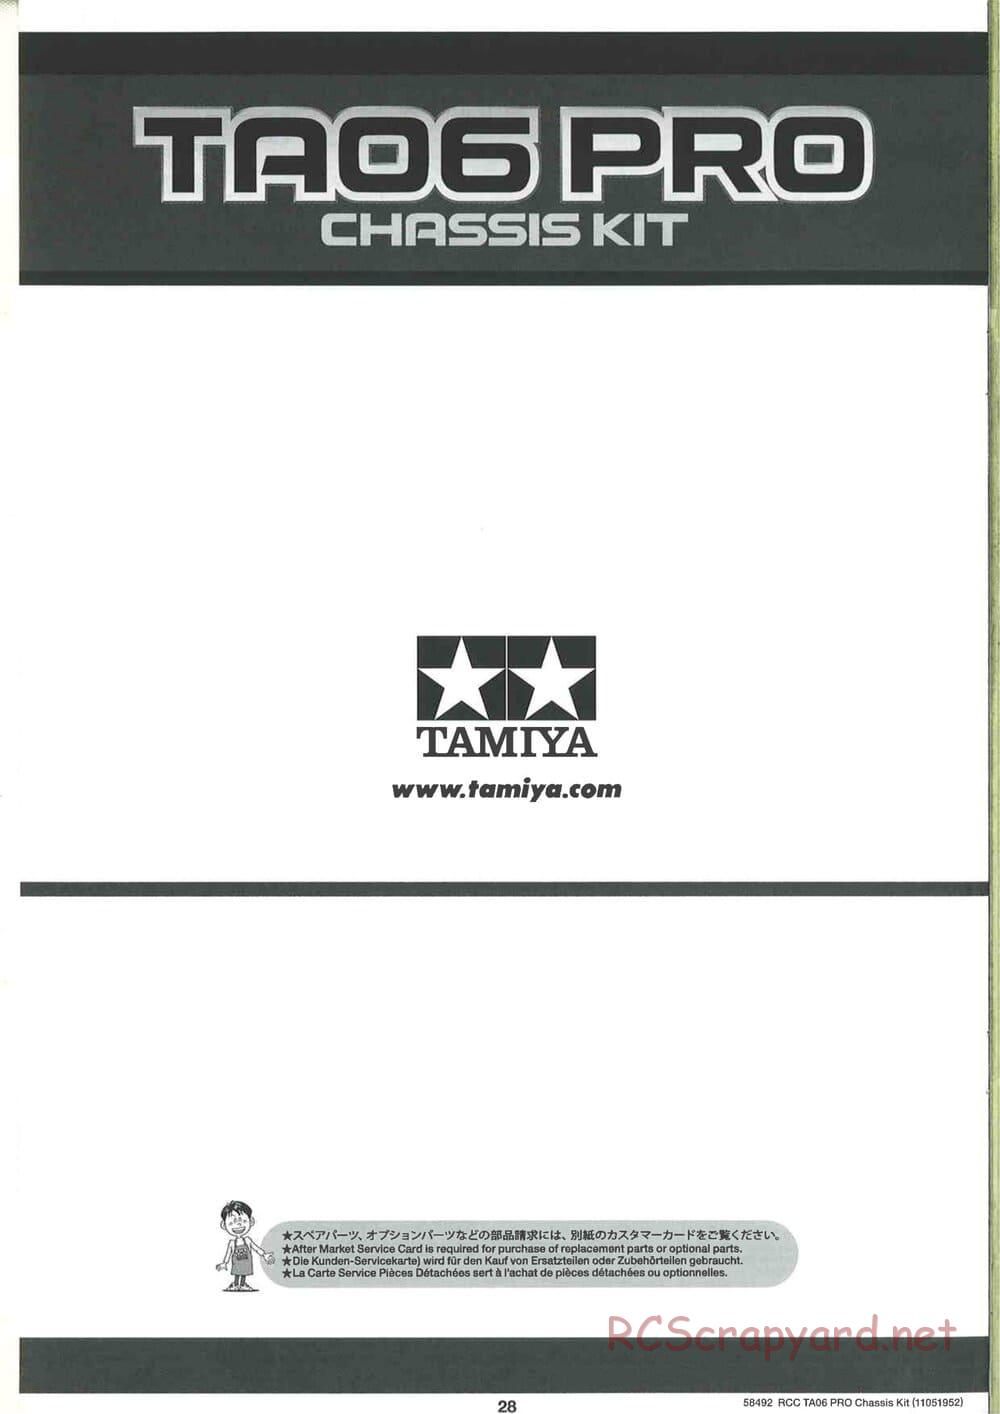 Tamiya - TA06 Pro Chassis - Manual - Page 28